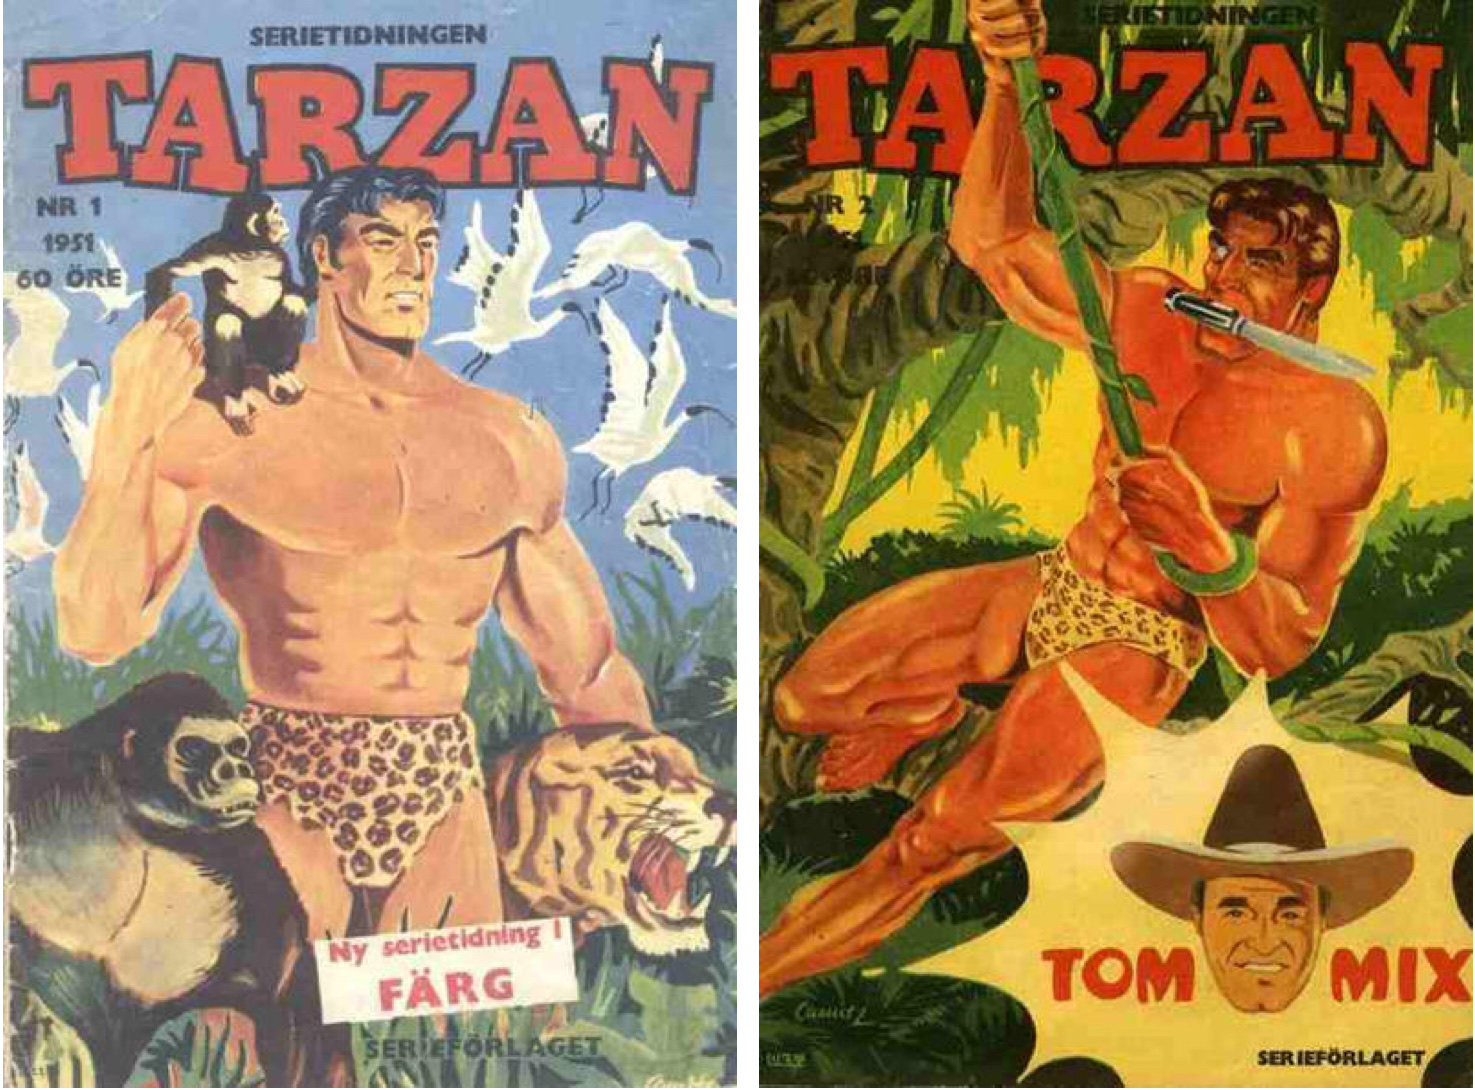 De första två numren av serietidningen Tarzan 1951.